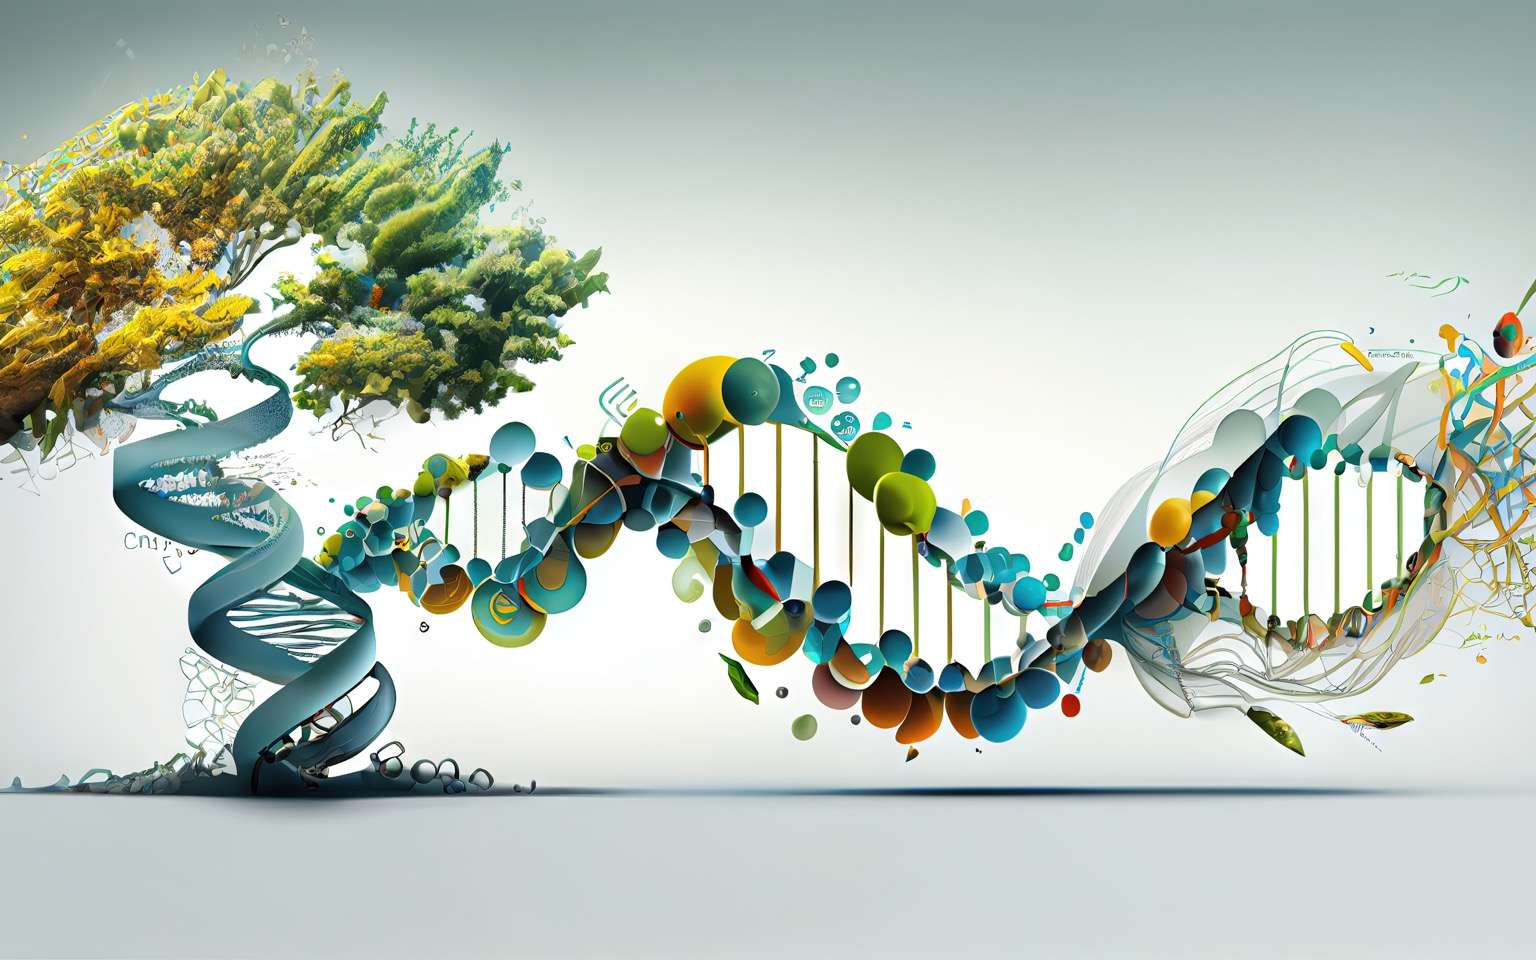 70 ans après la découverte de l'ADN, les scientifiques sont maintenant capables de le fabriquer artificiellement